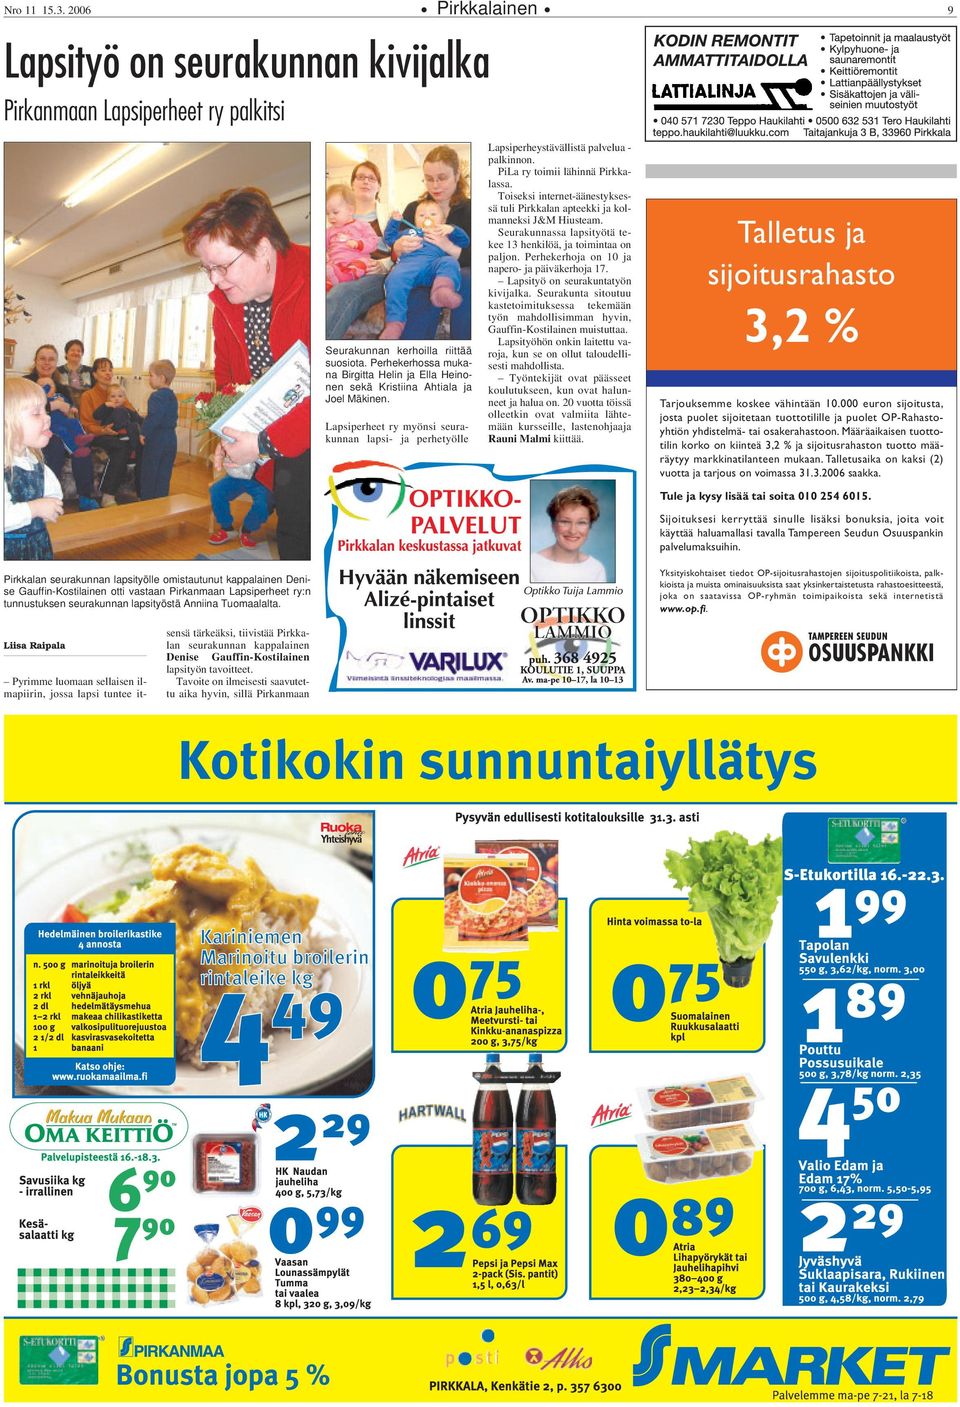 PiLa ry toimii lähinnä Pirkkalassa. Toiseksi internet-äänestyksessä tuli Pirkkalan apteekki ja kolmanneksi J&M Hiusteam. Seurakunnassa lapsityötä tekee 13 henkilöä, ja toimintaa on paljon.